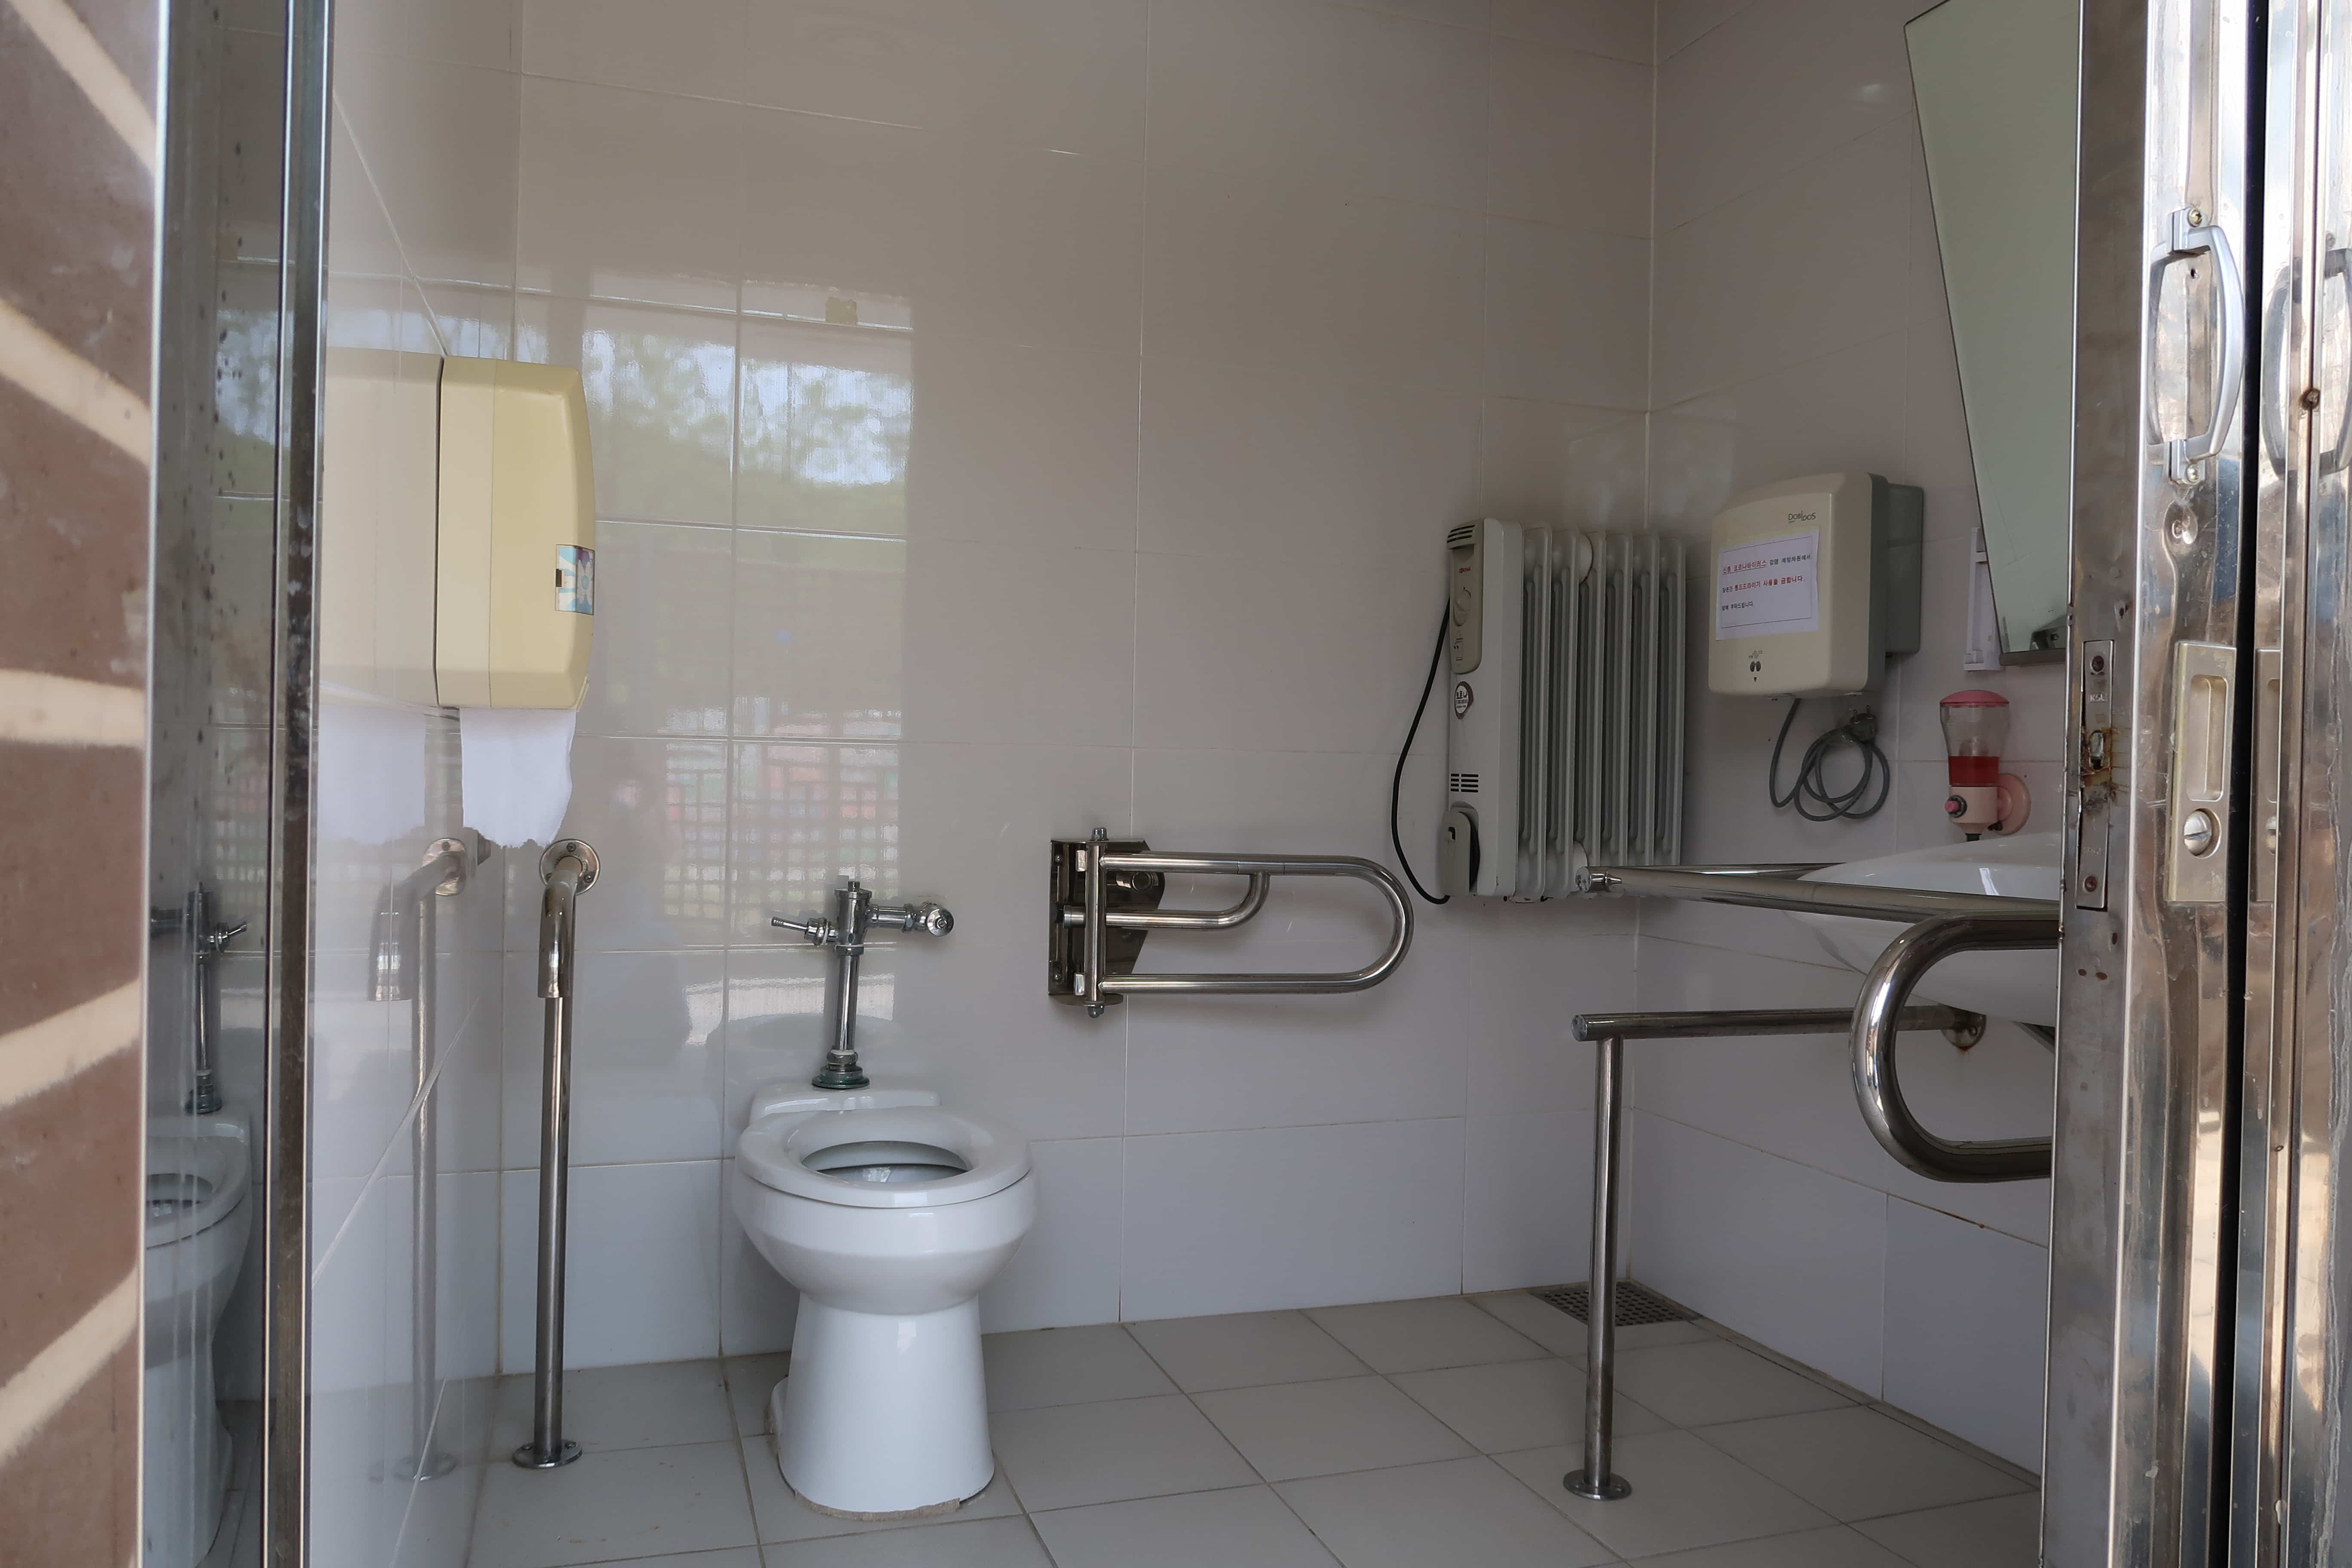 장애인 화장실0 : 야외에 단독 건물로 설치된 장애인 화장실 내부